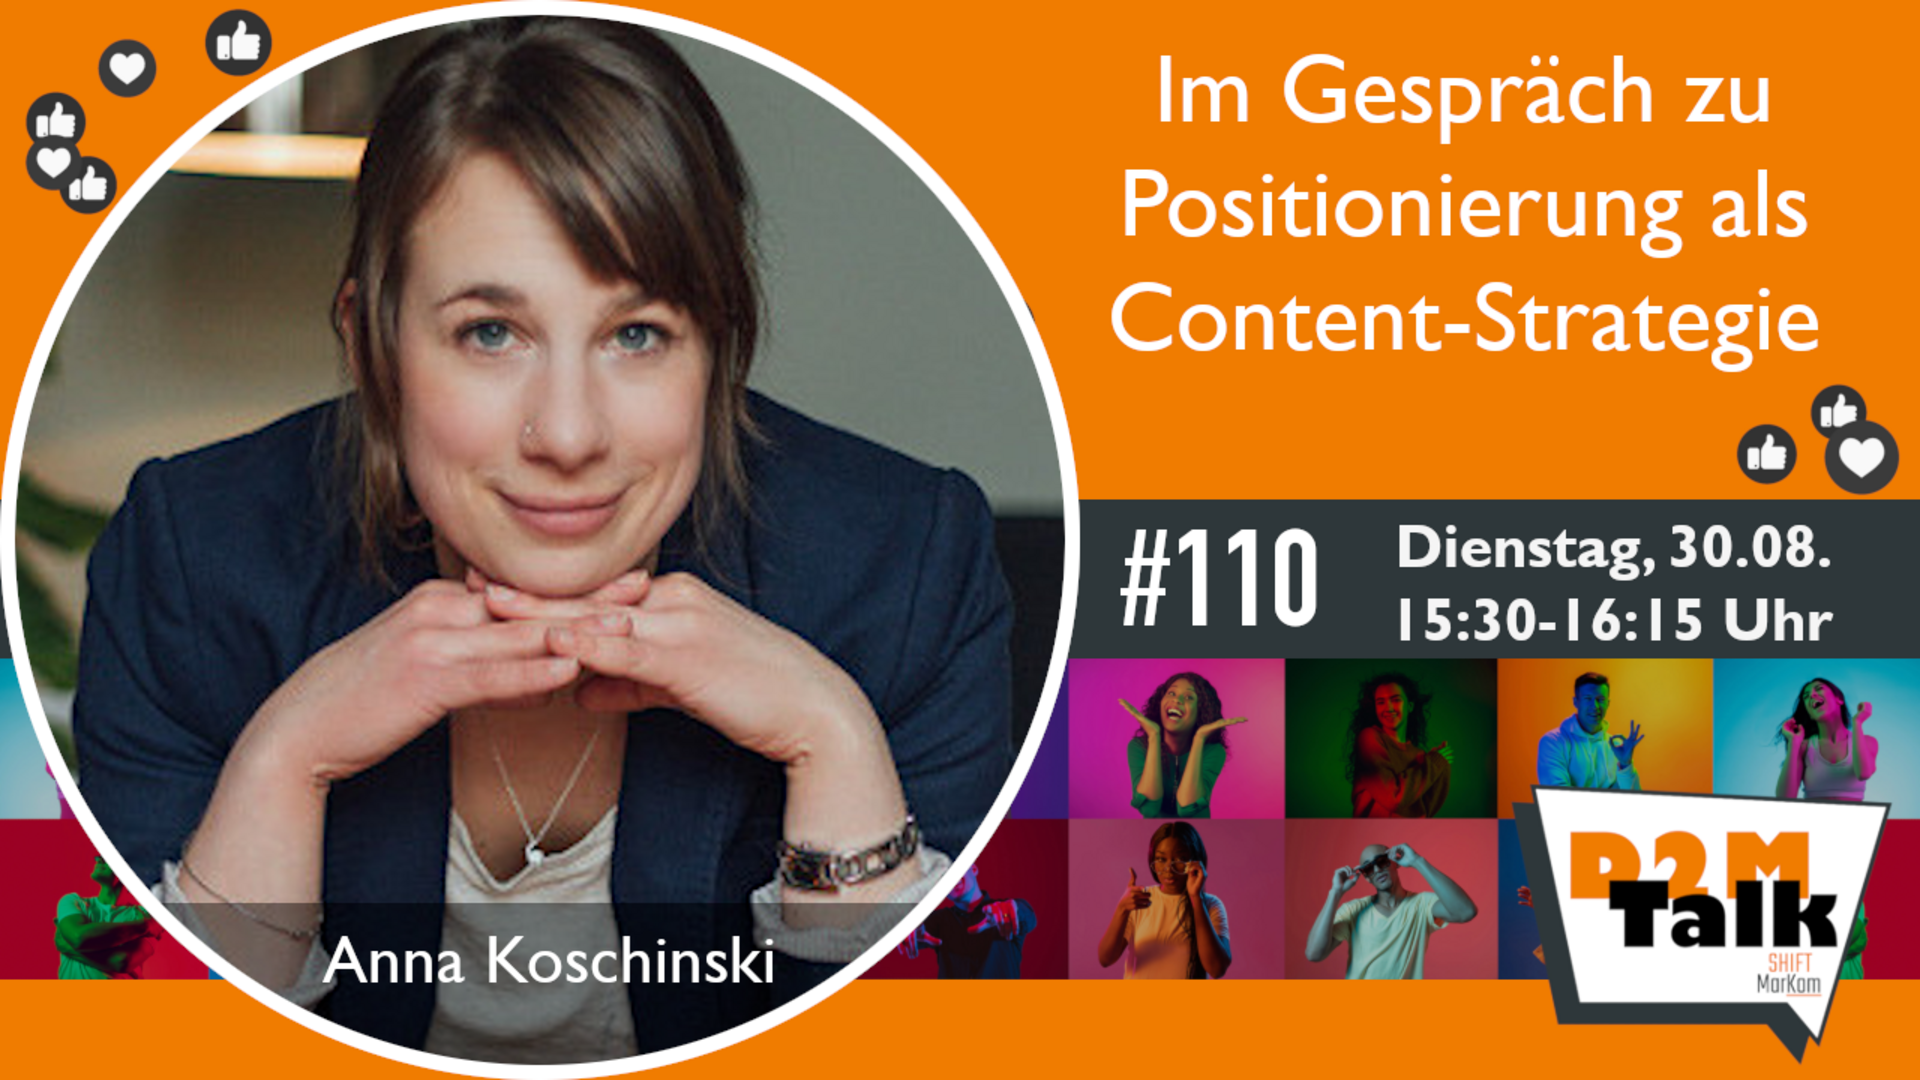 Im Gespräch mit Anna Koschinski zu Themen-Positionierung und Community-Building als Content-Strategie